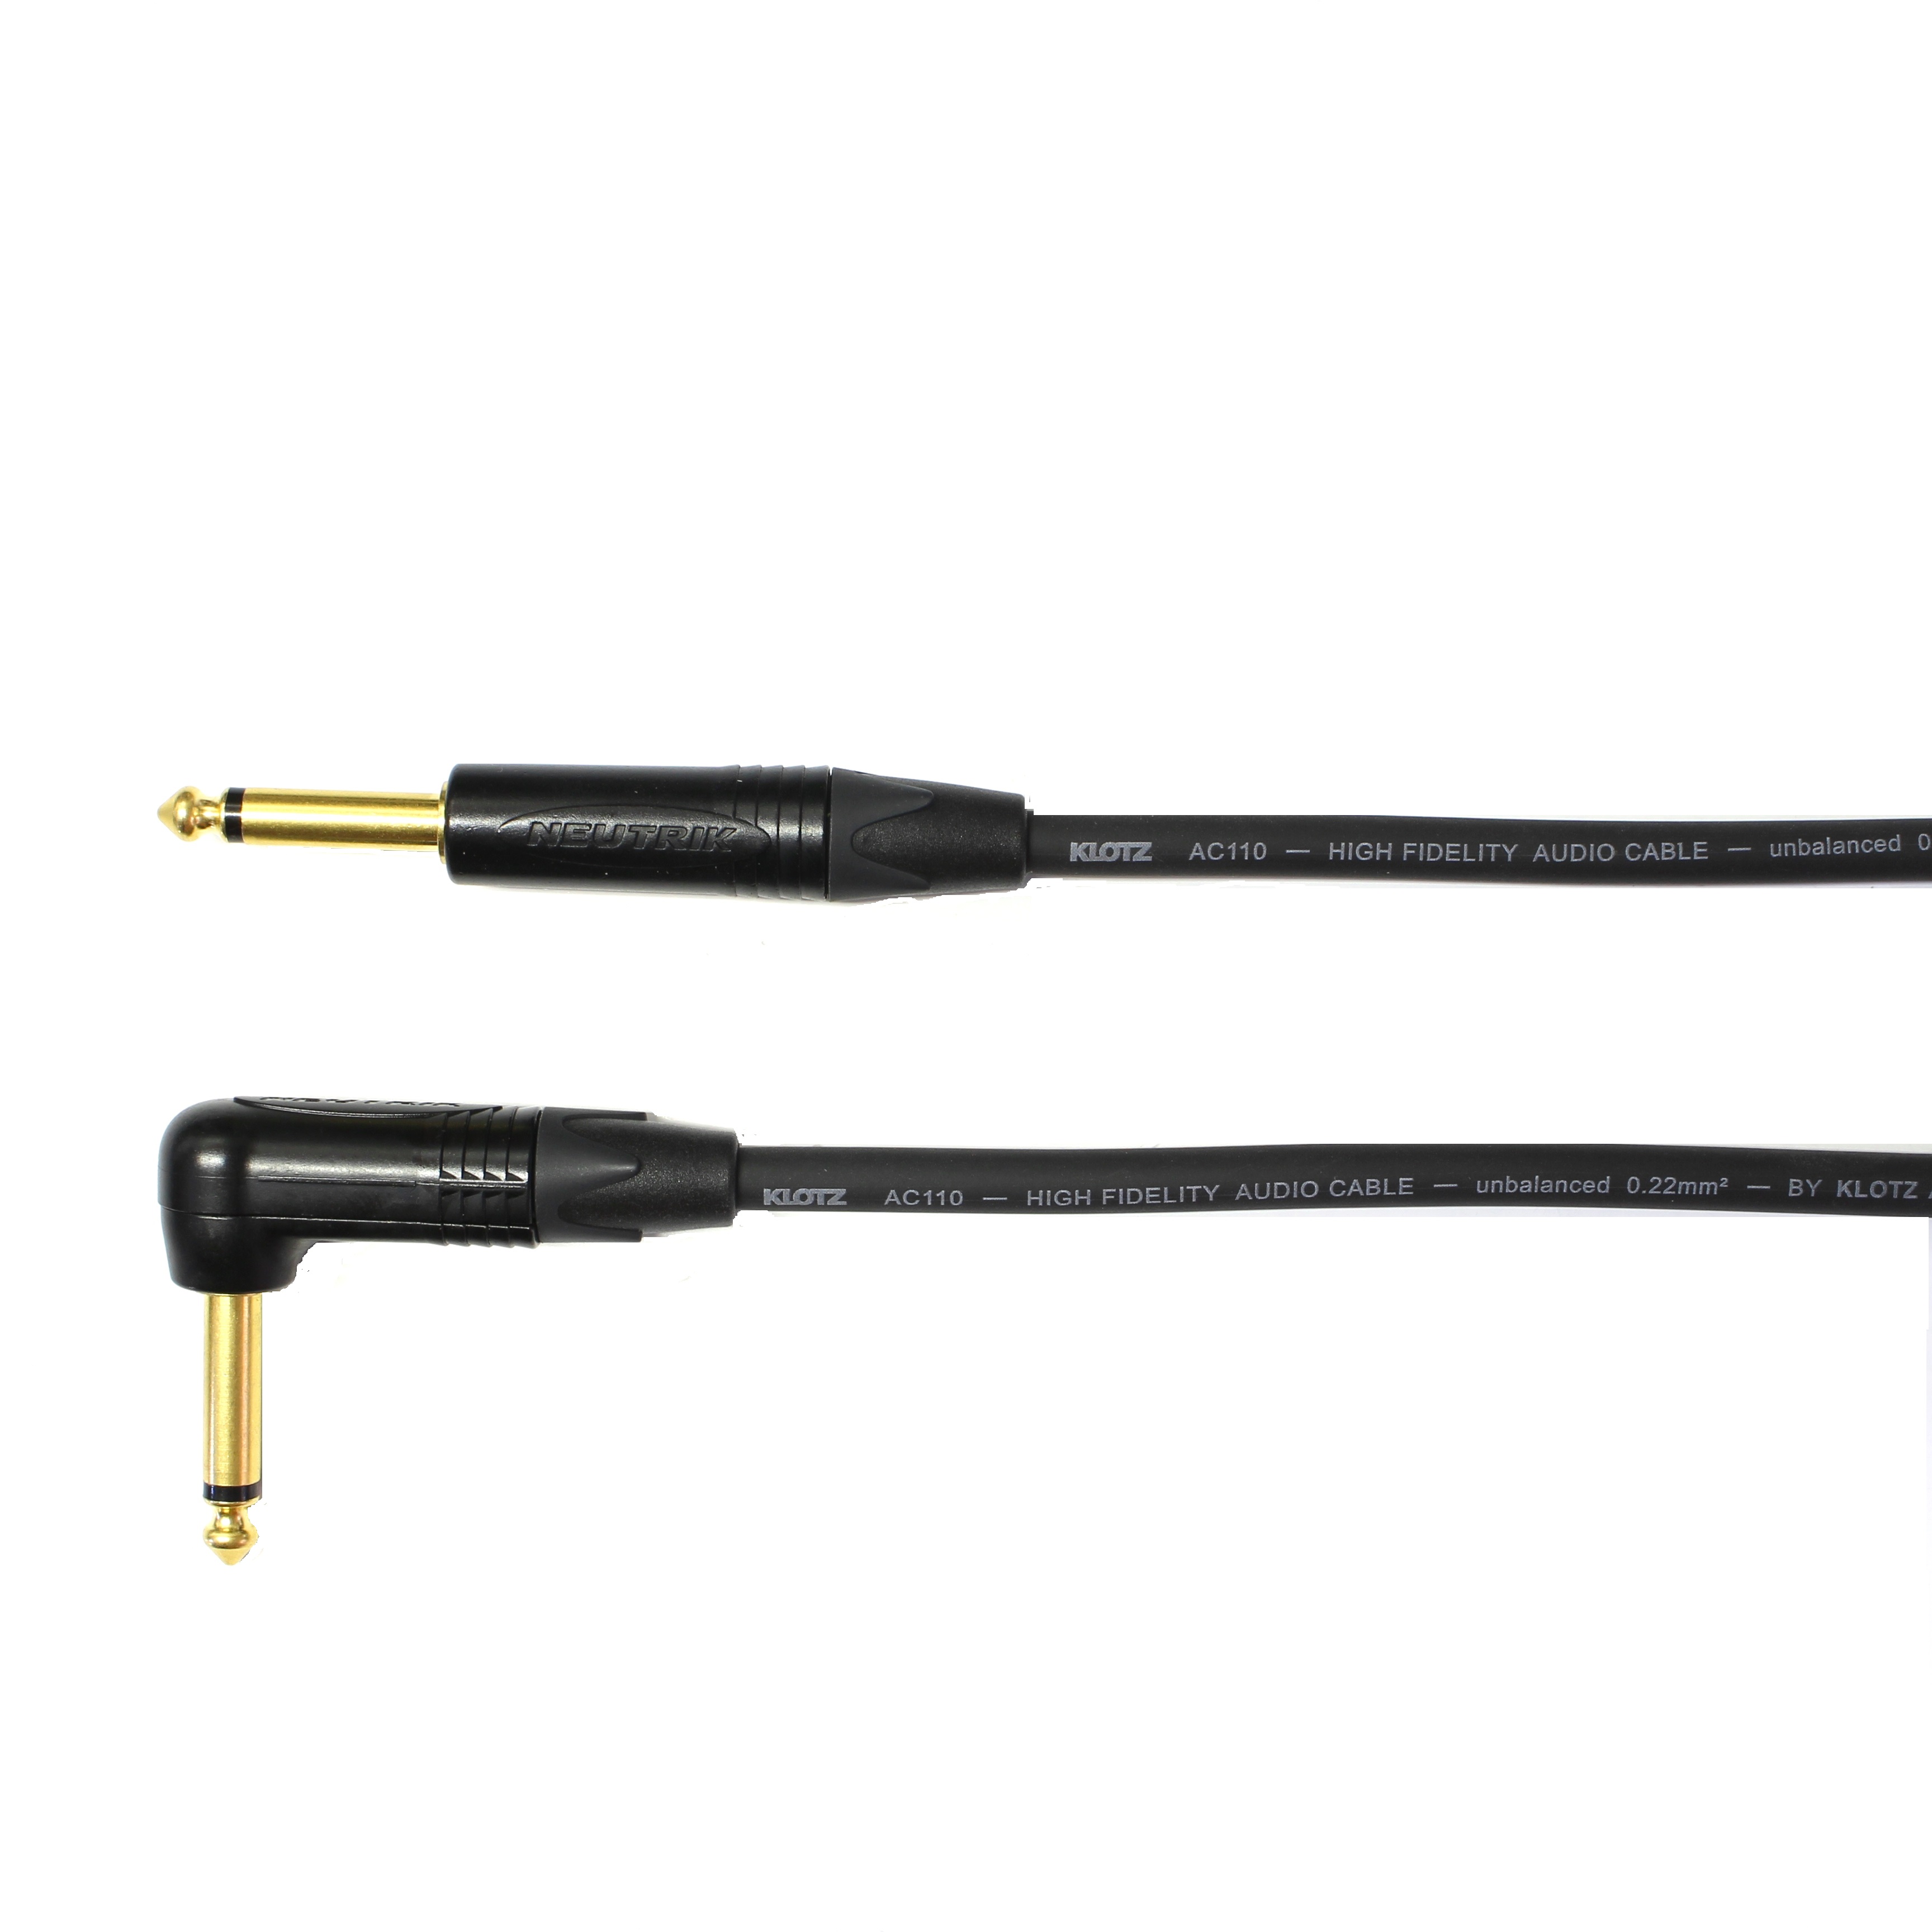 Kytarový kabel Jack 6,3 mono přímý/ Jack 6,3 mono úhlový, 6 m, AC110